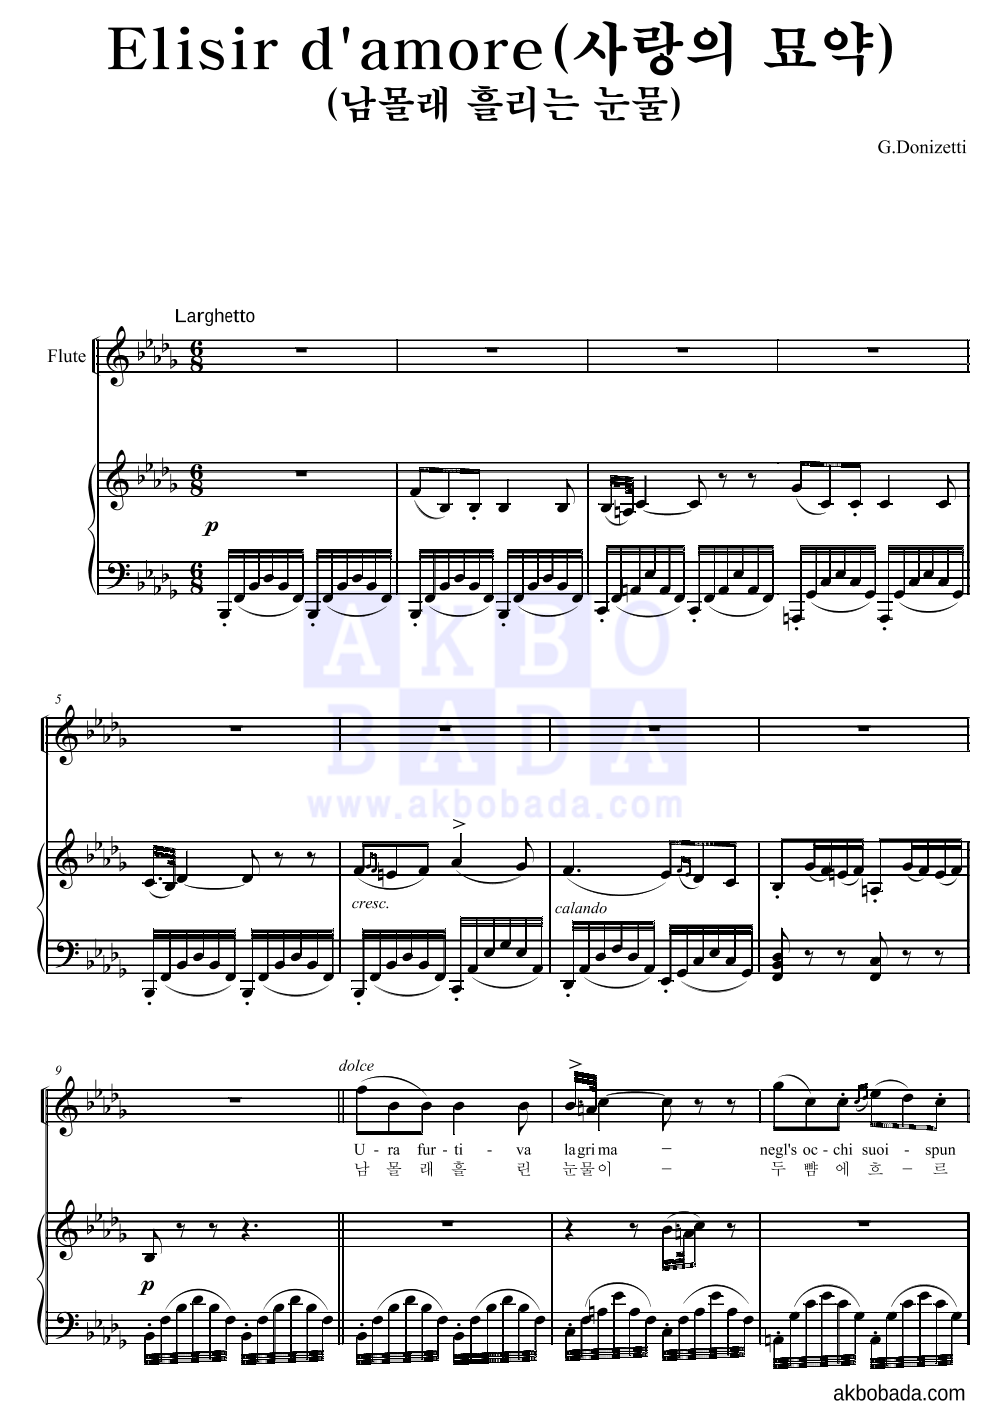 도니제티 - Elisir d'amore(사랑의 묘약)(남몰래 흘리는 눈물) 플룻&피아노 악보 